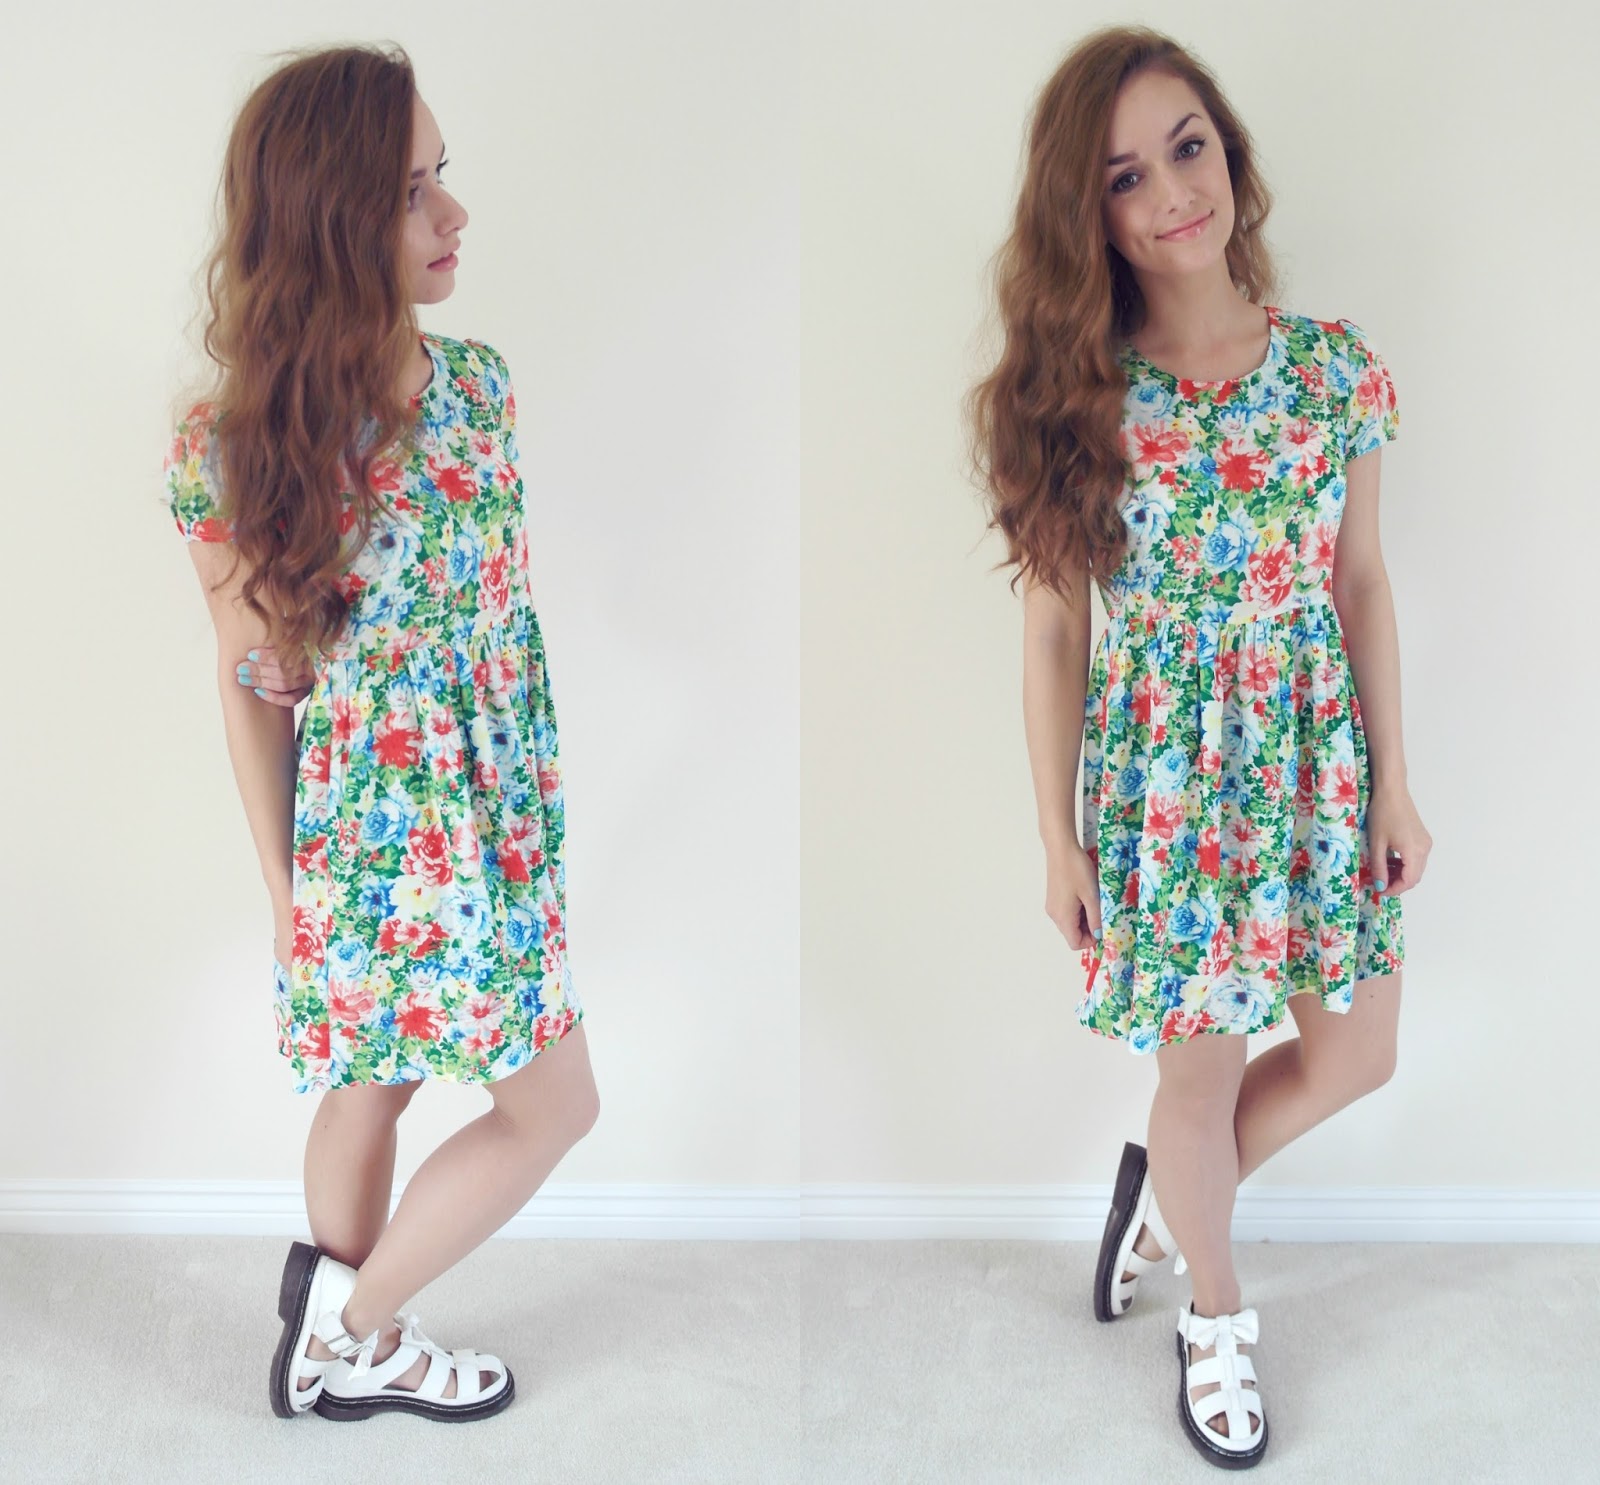 OOTD | Floral Tea Dress - Thumbelina Lillie